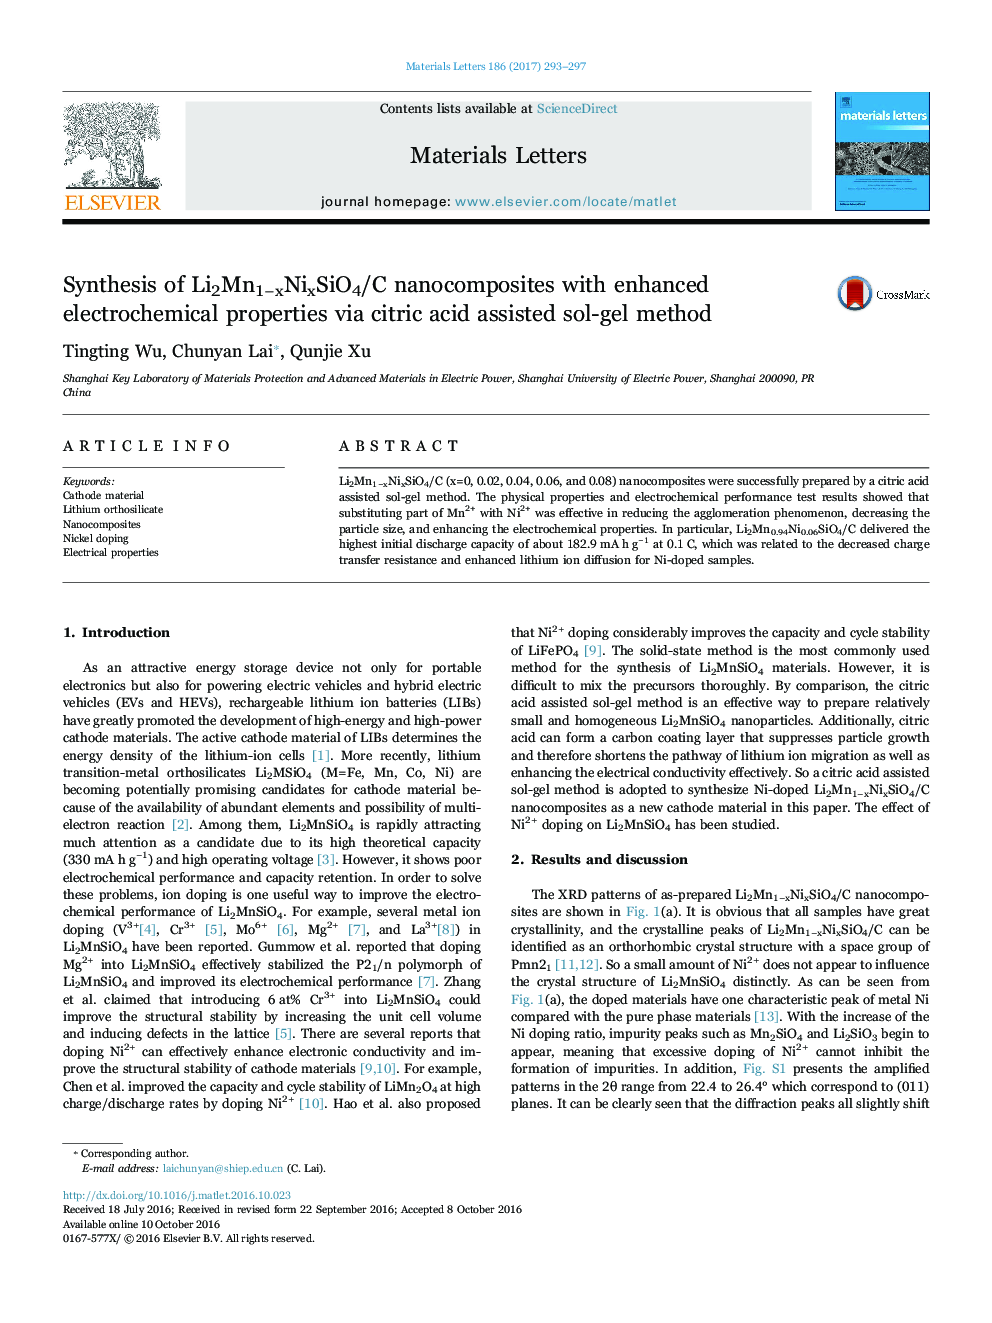 Synthesis of Li2Mn1âxNixSiO4/C nanocomposites with enhanced electrochemical properties via citric acid assisted sol-gel method